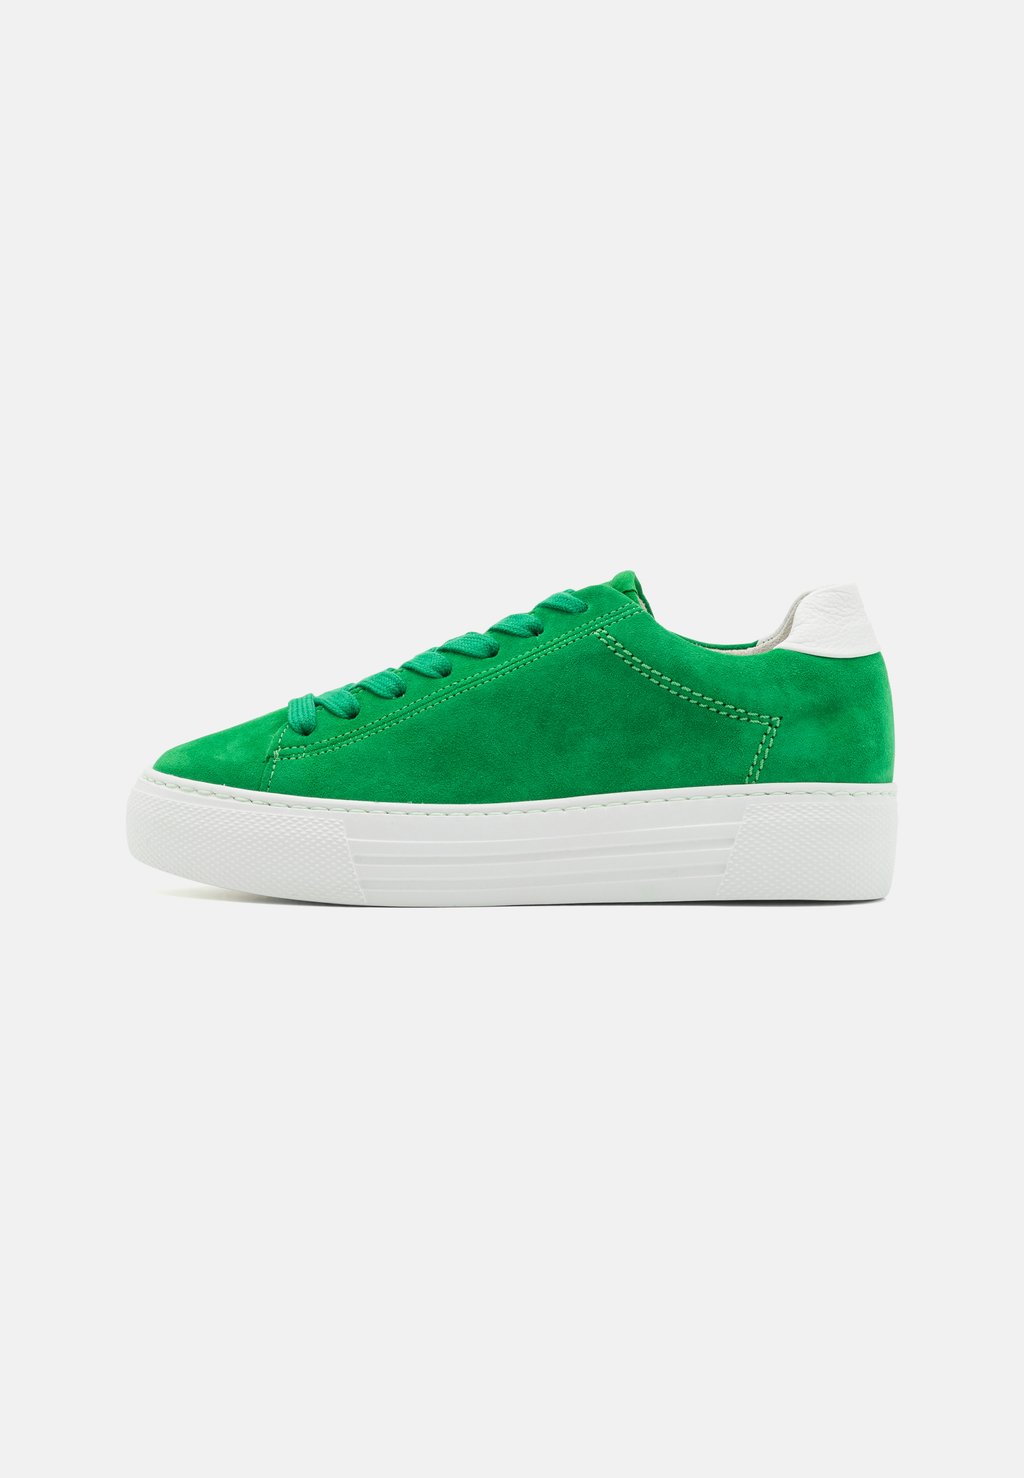 Низкие кроссовки Gabor Comfort, зеленые кроссовки gabor comfort zapatillas red